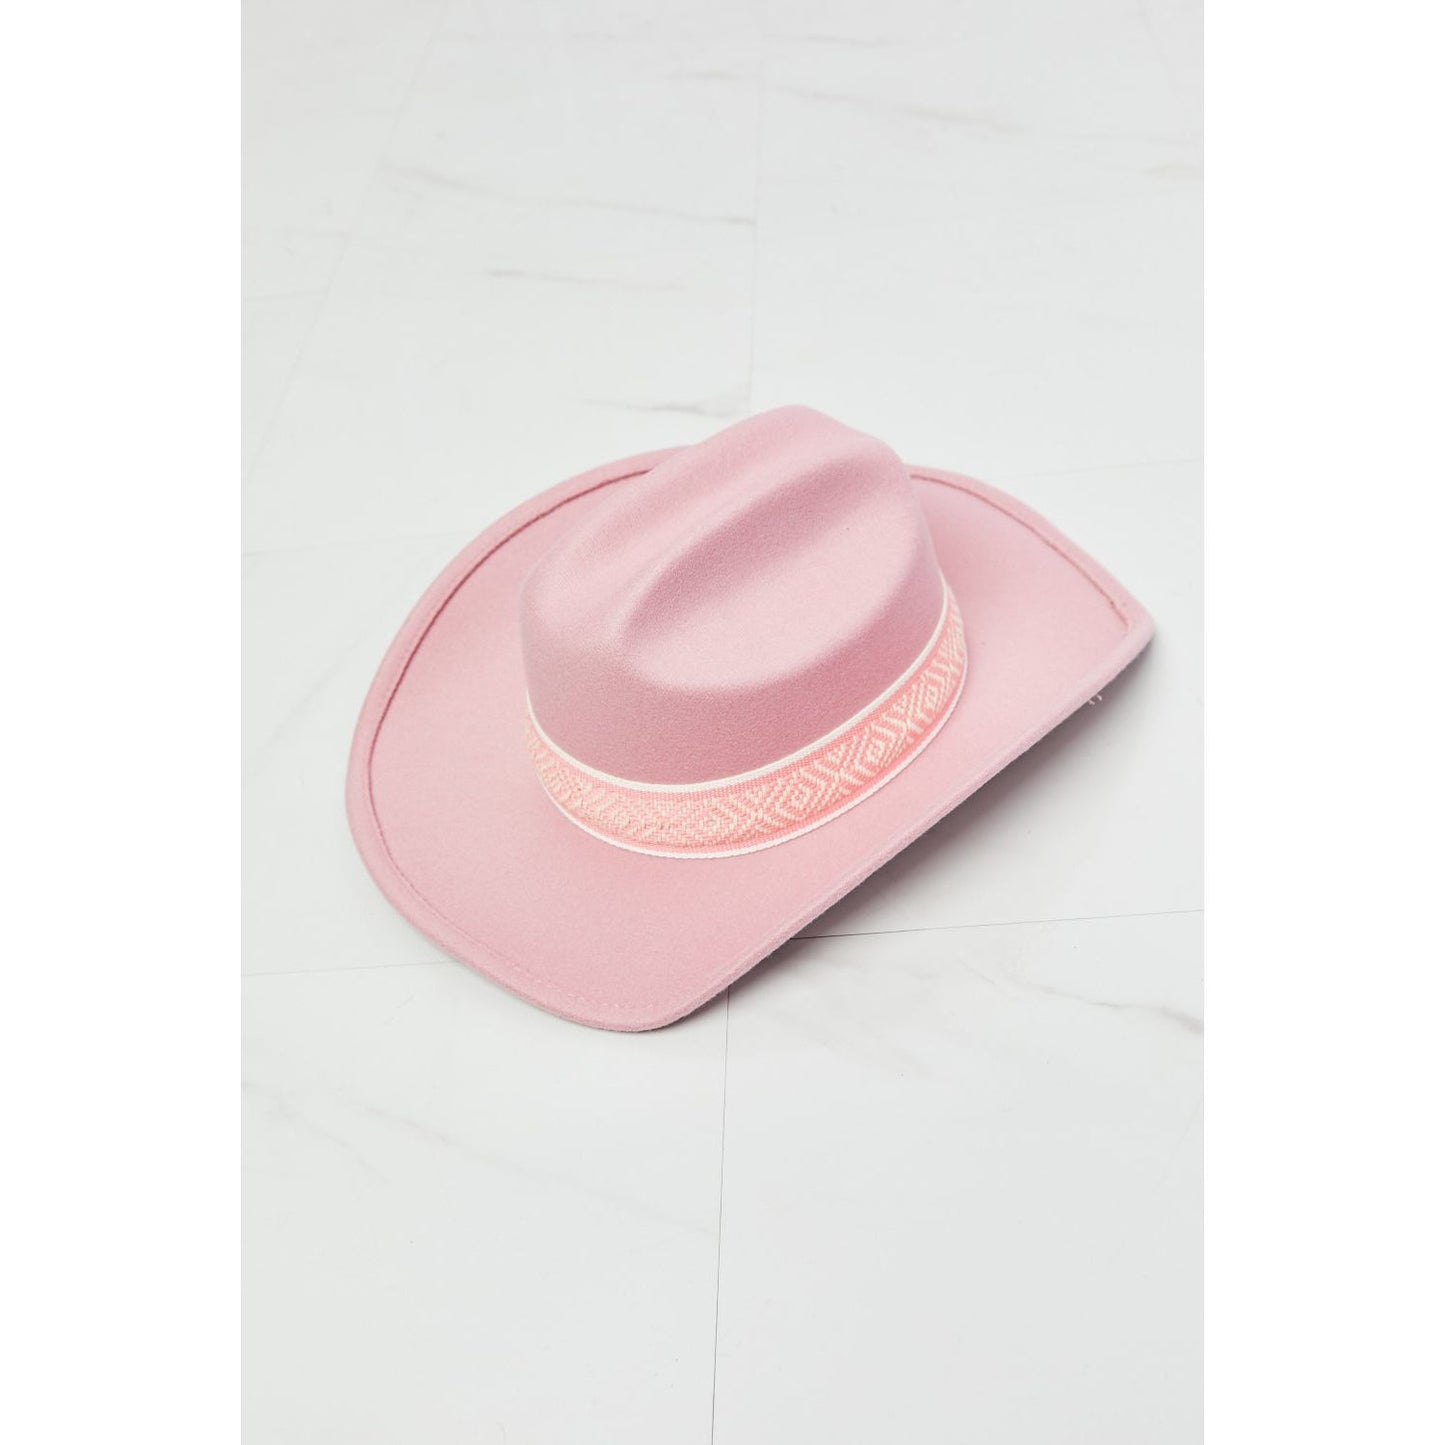 Fame Western Cutie Cowboy Hat in Pink - TiffanyzKlozet